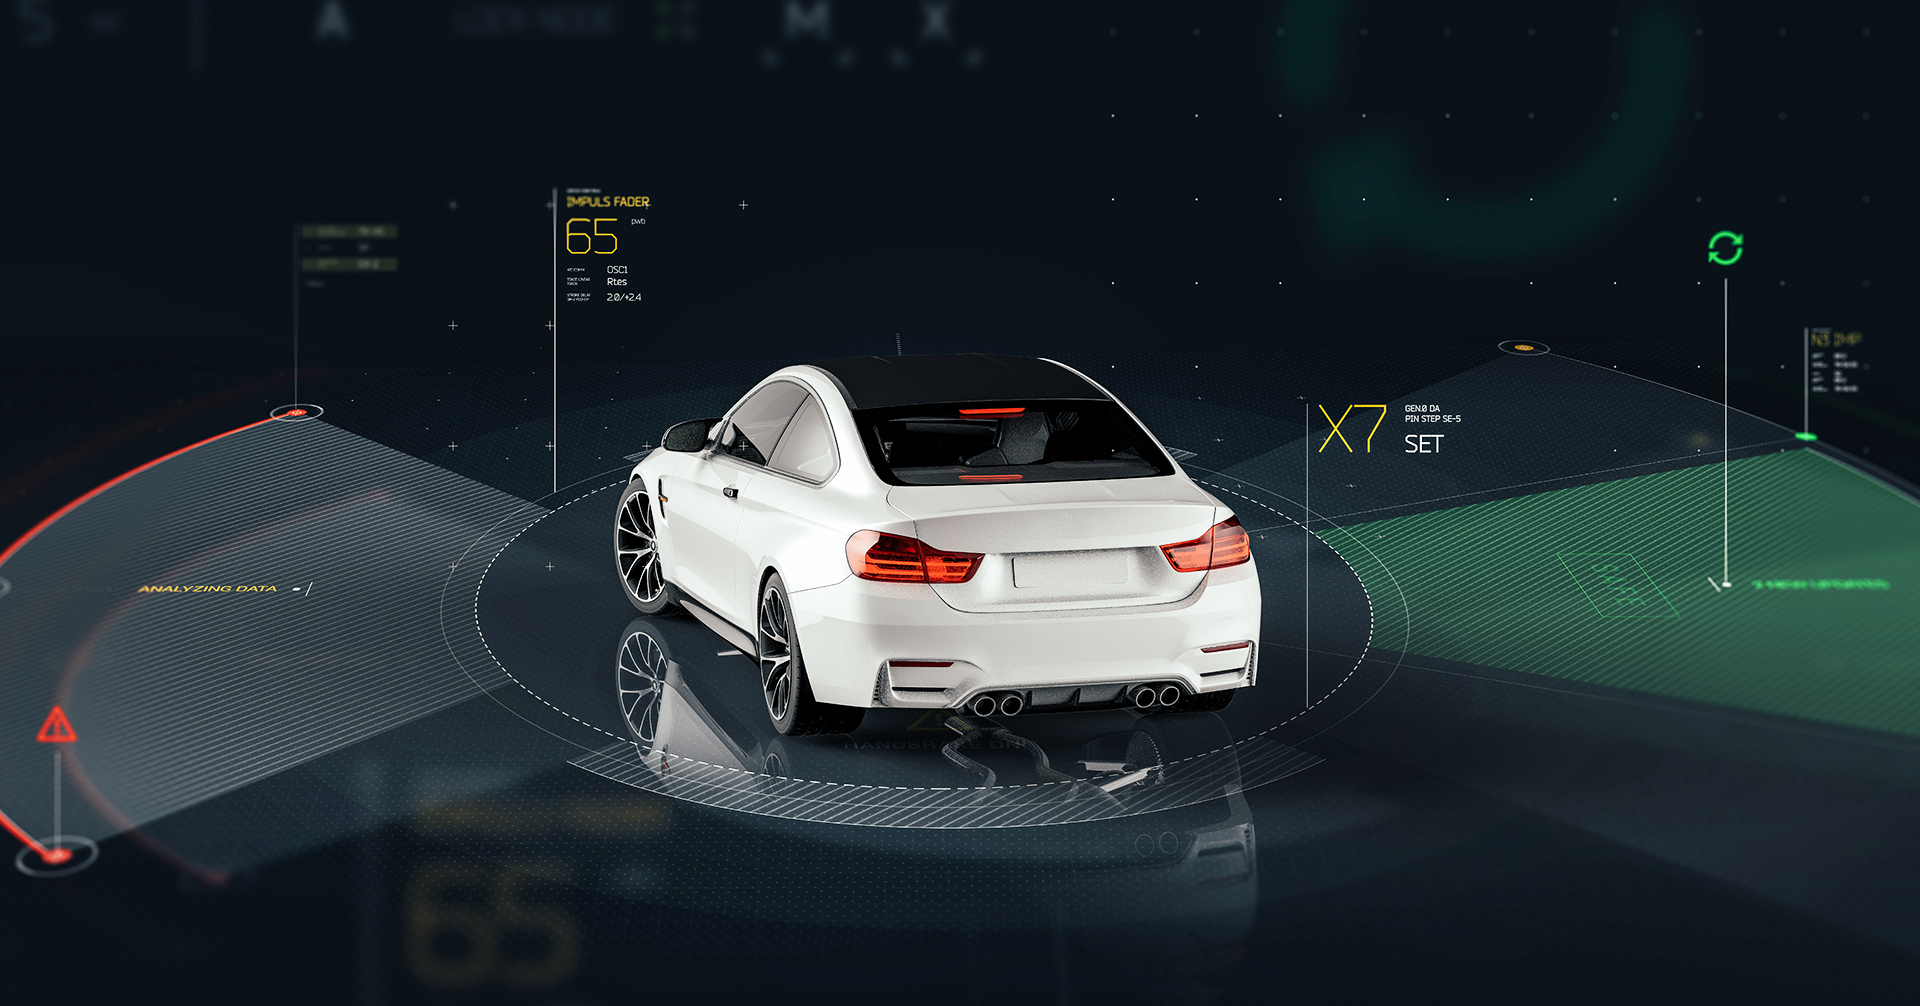 高级驾驶辅助系统主要以各种传感器、软件交互应用